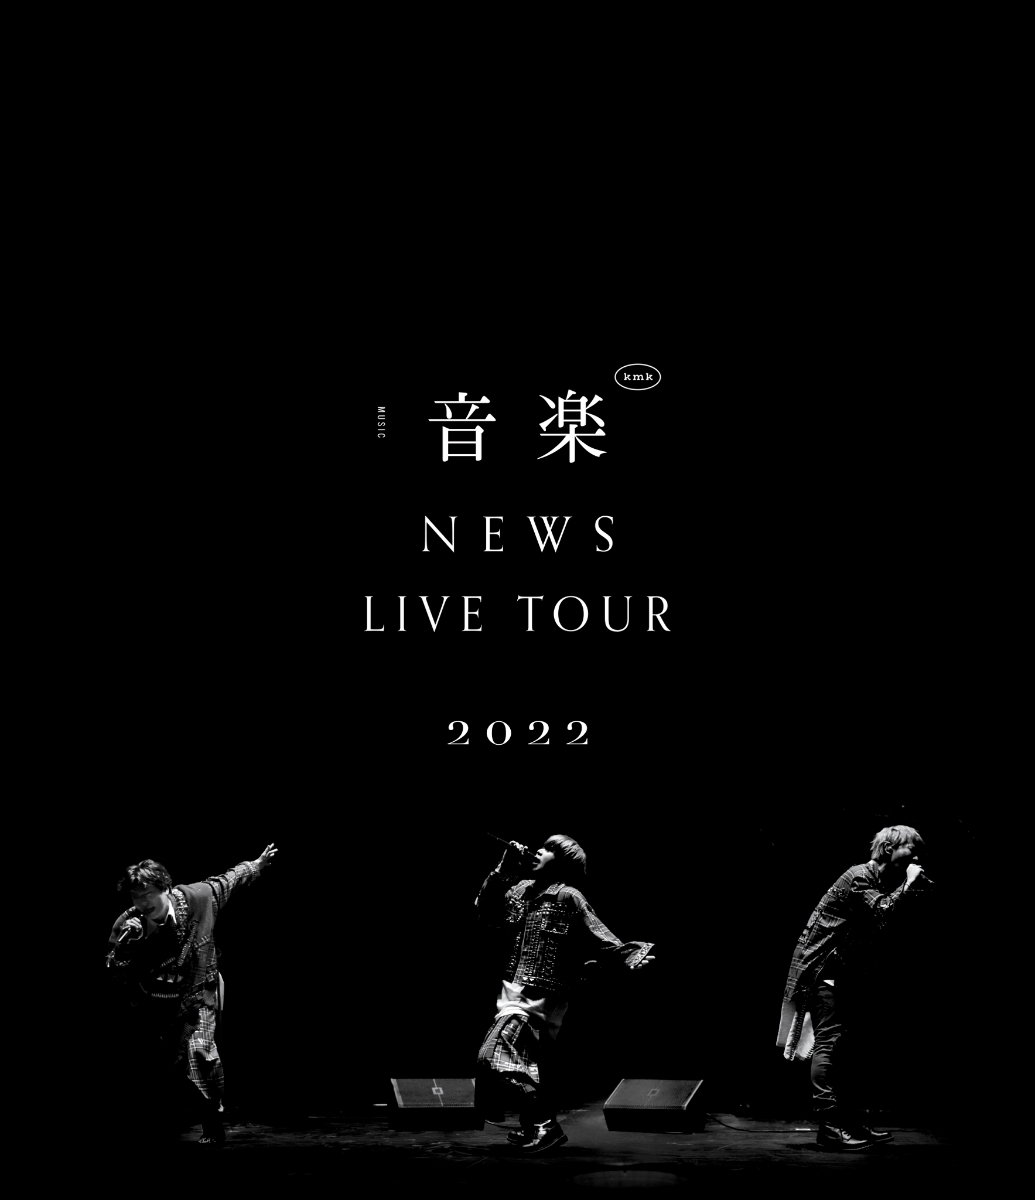 楽天ブックス: NEWS LIVE TOUR 2022 音楽(Blu-ray通常盤)【Blu-ray